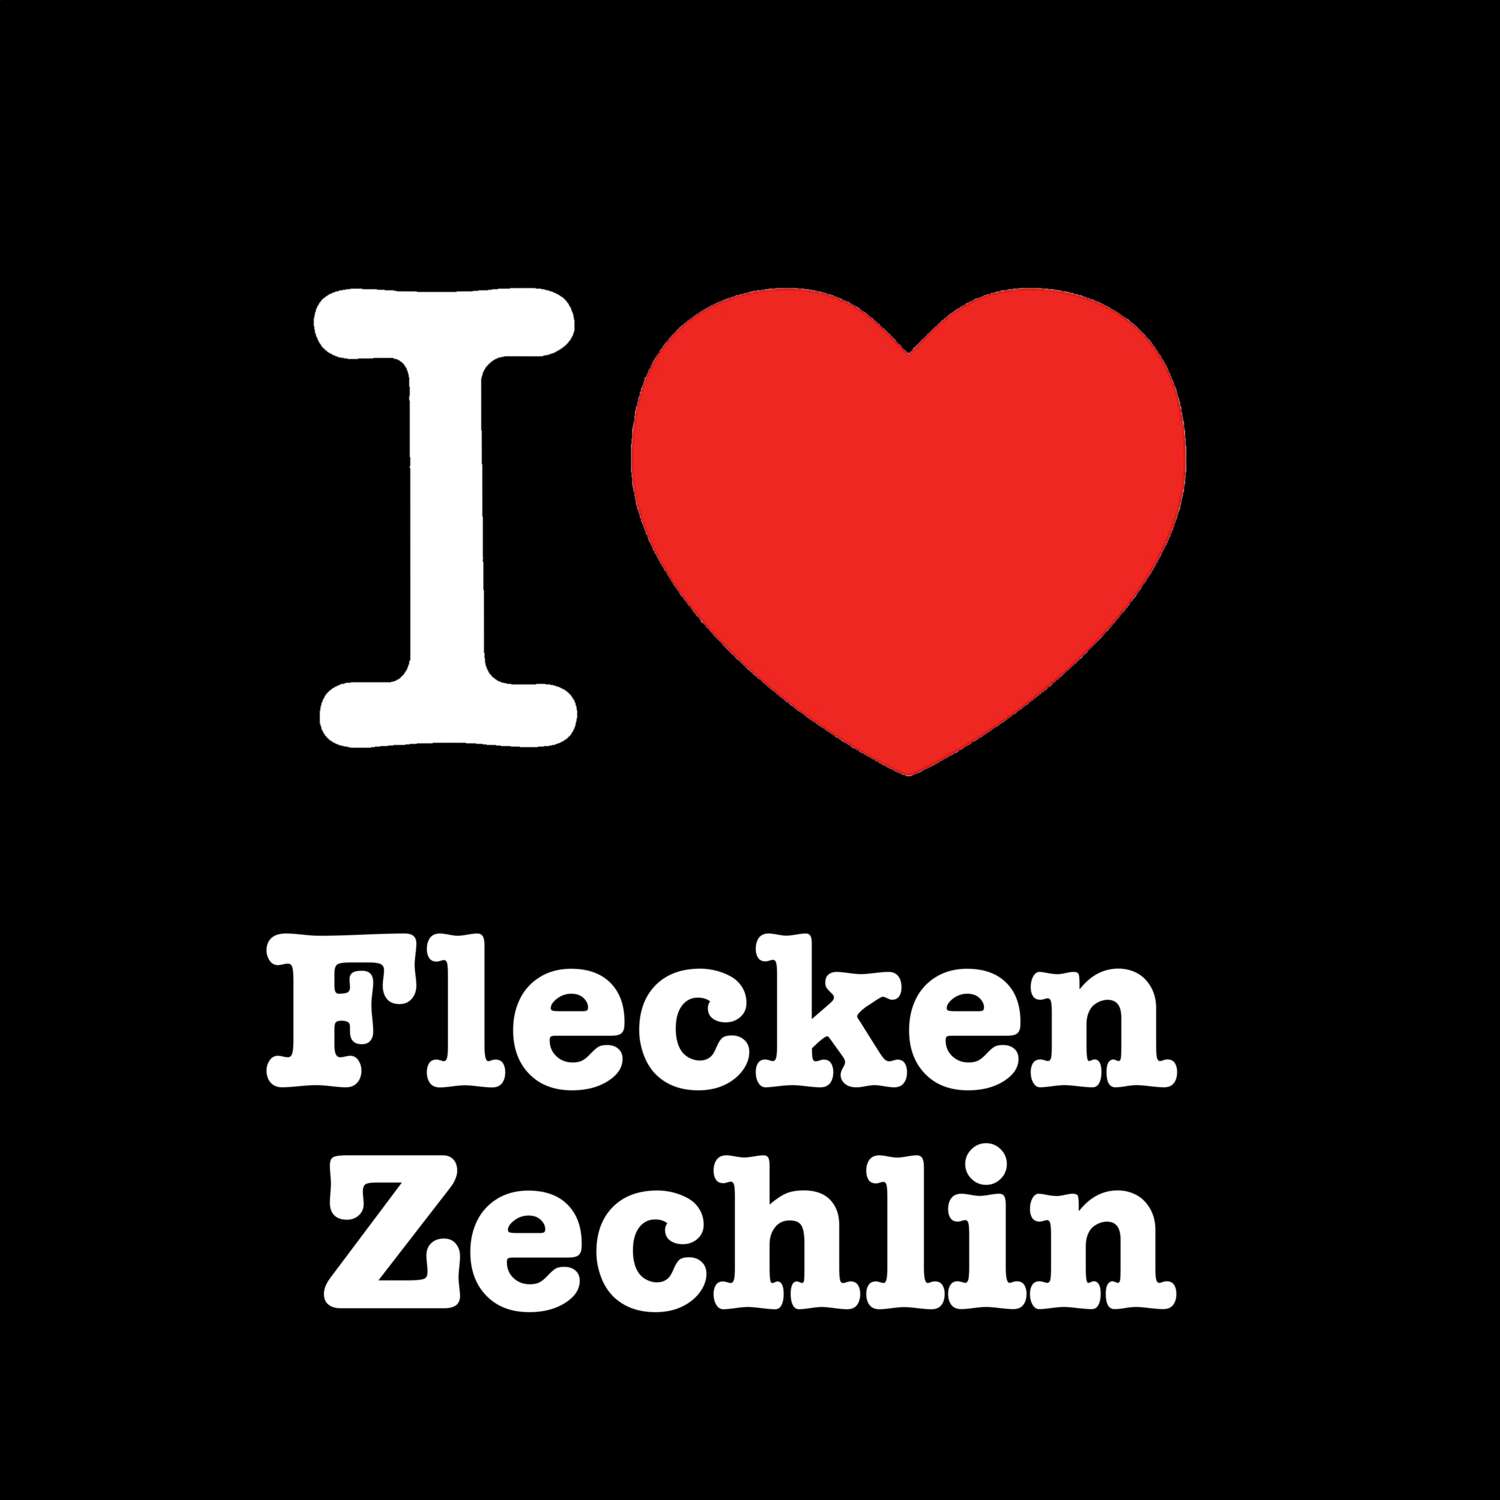 Flecken Zechlin T-Shirt »I love«